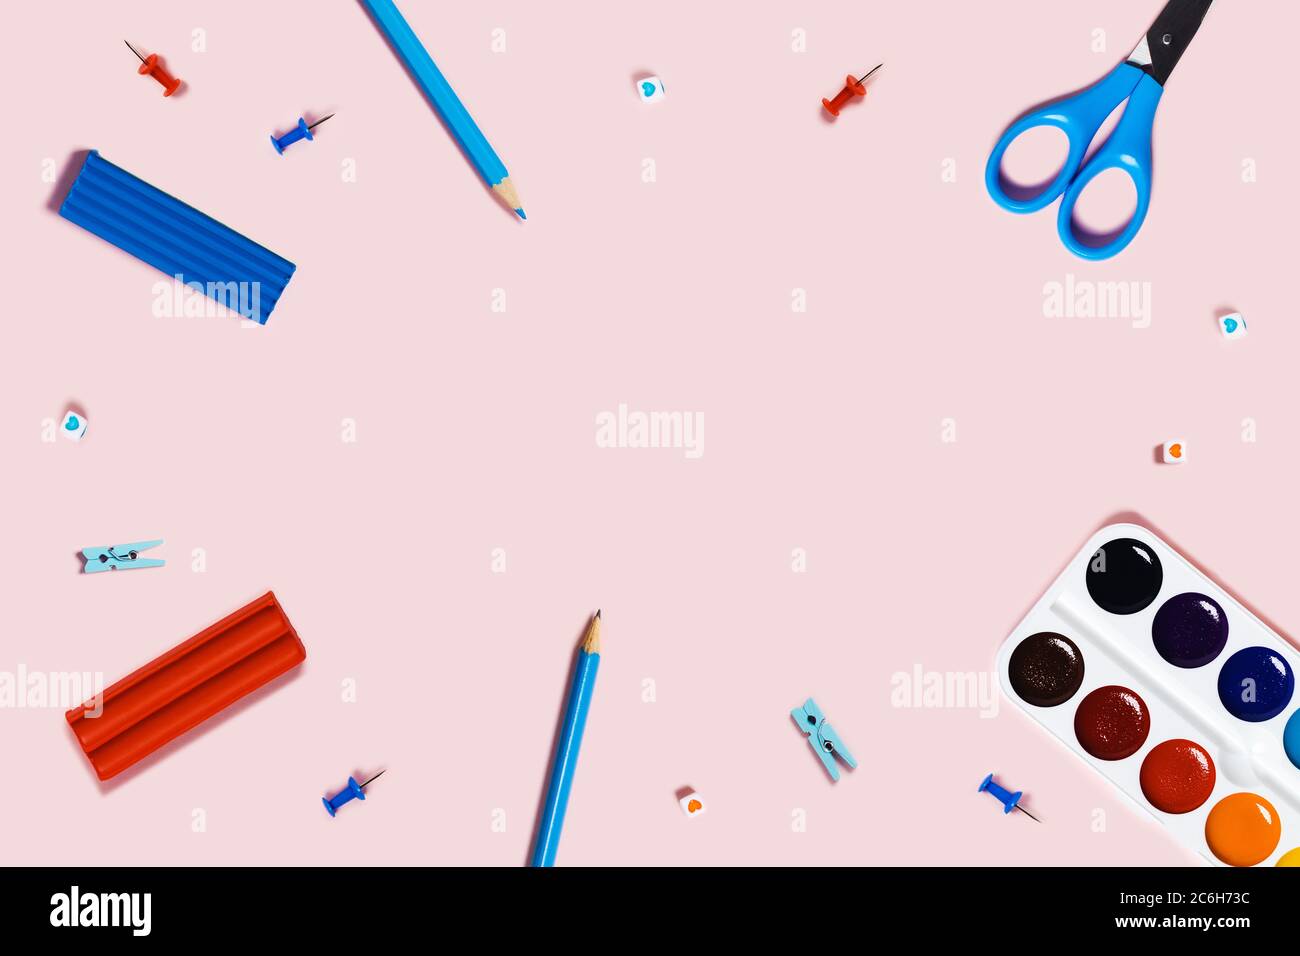 Foto di ritorno a scuola con blu e matite, graffette rosse, forbici, acquerello e plastilina su sfondo rosa. Foto Stock